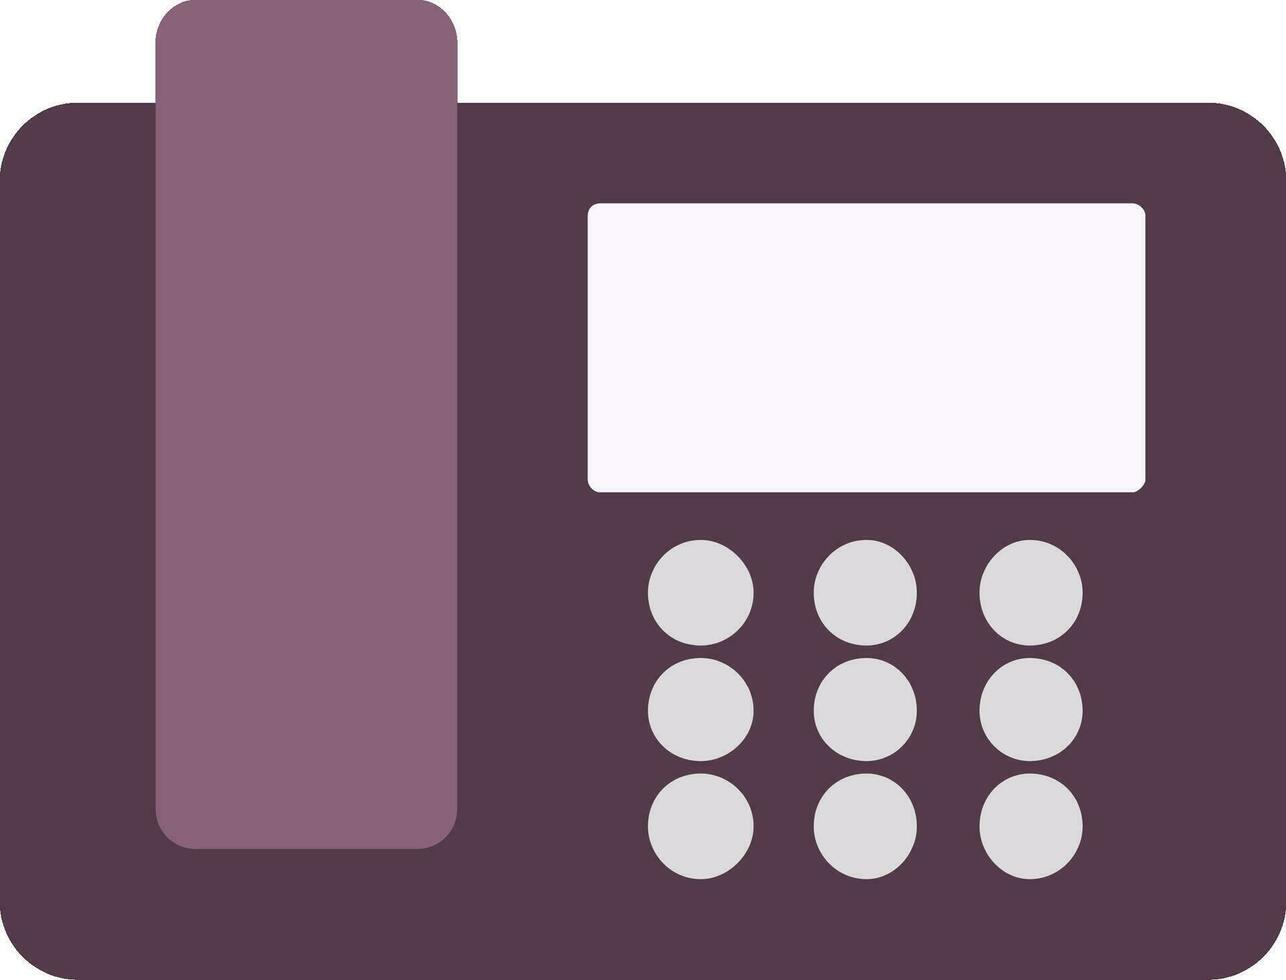 Telephone Flat Icon vector